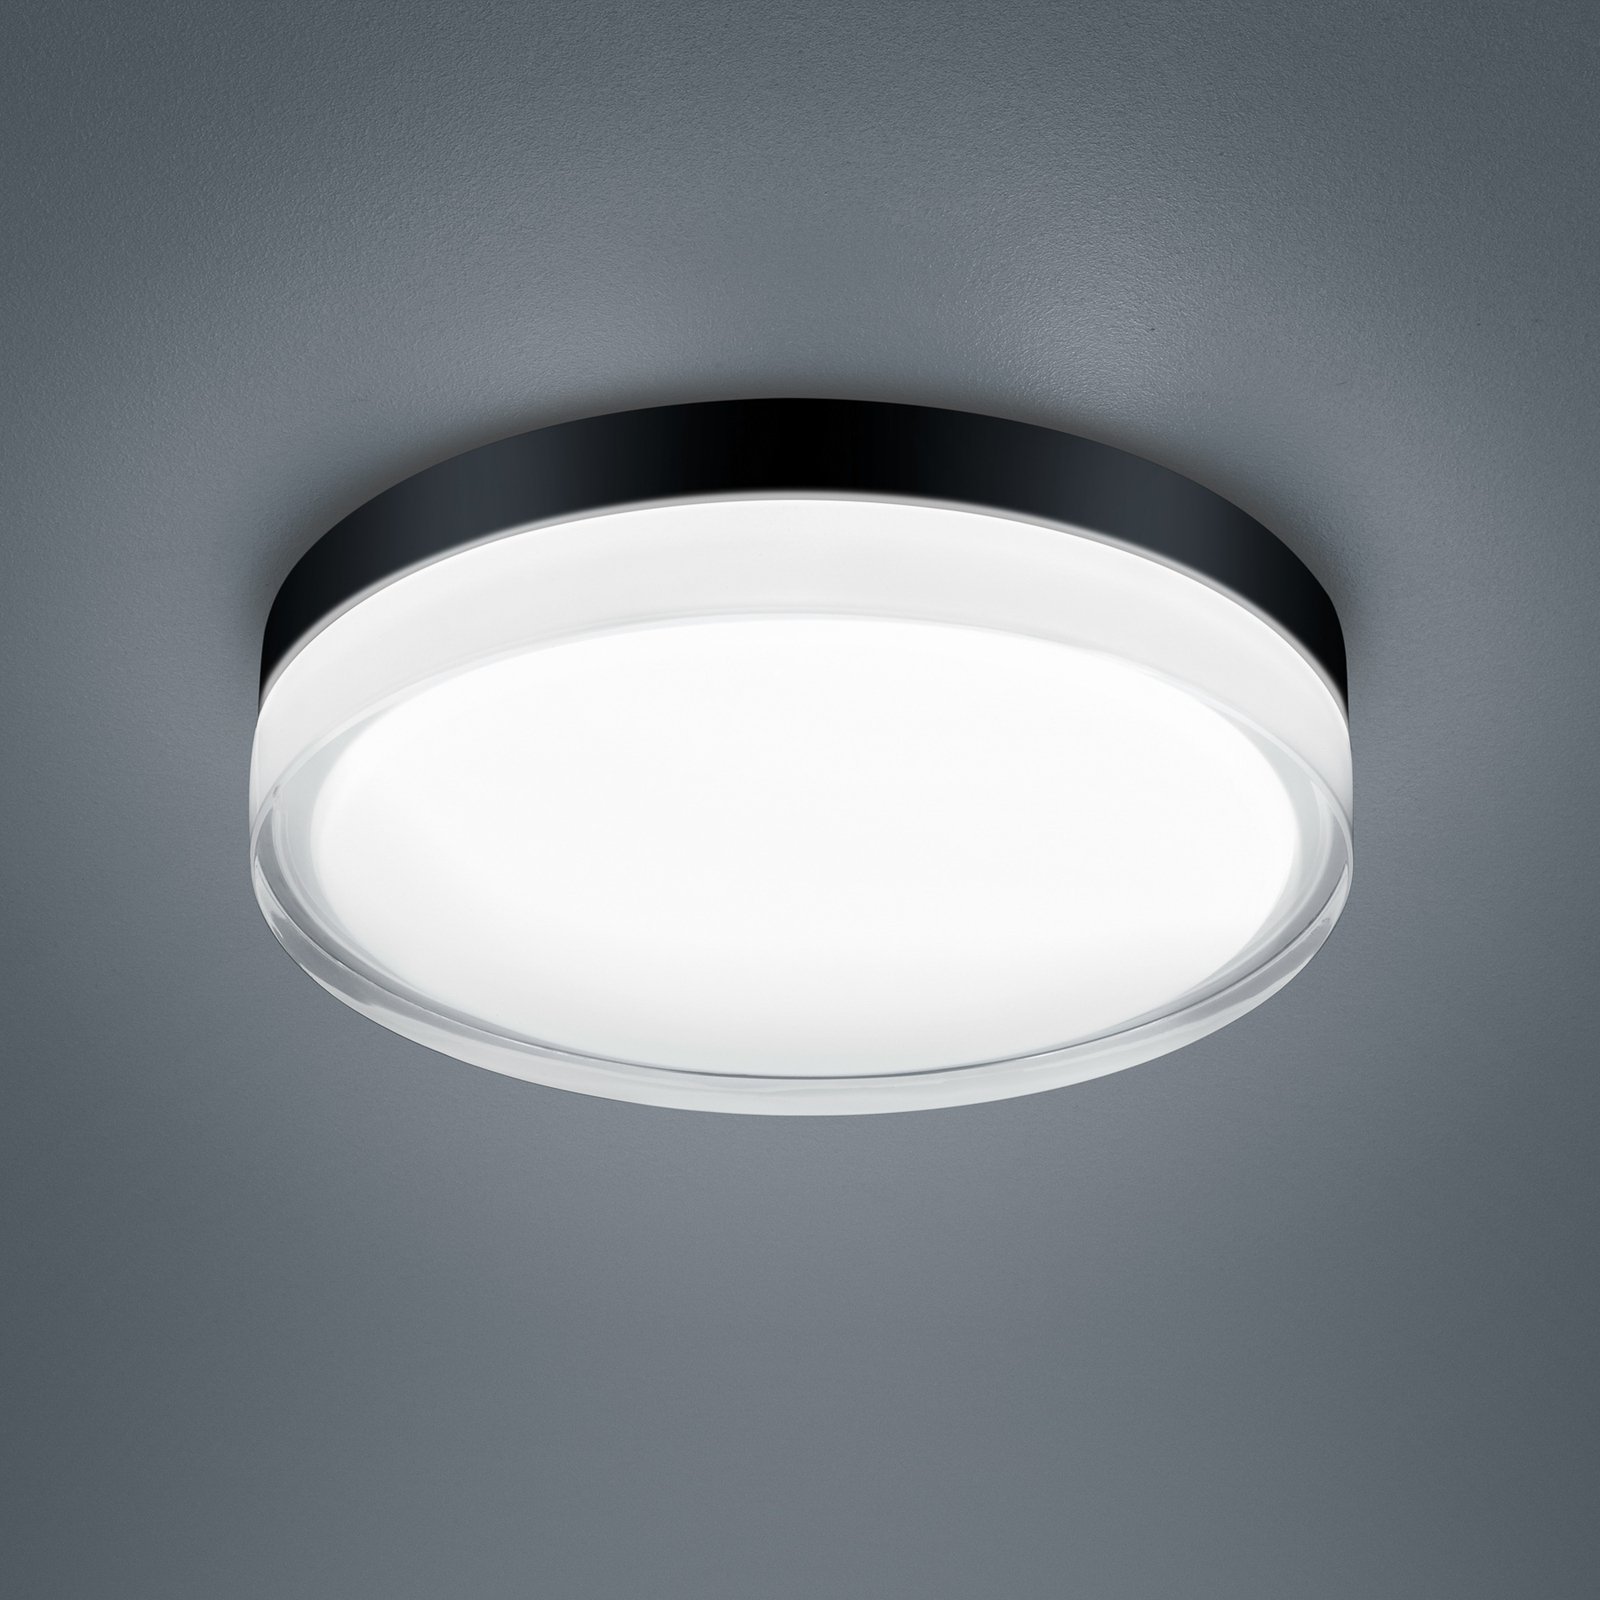 Helestra Tana LED lámpa, fekete, Ø 28 cm